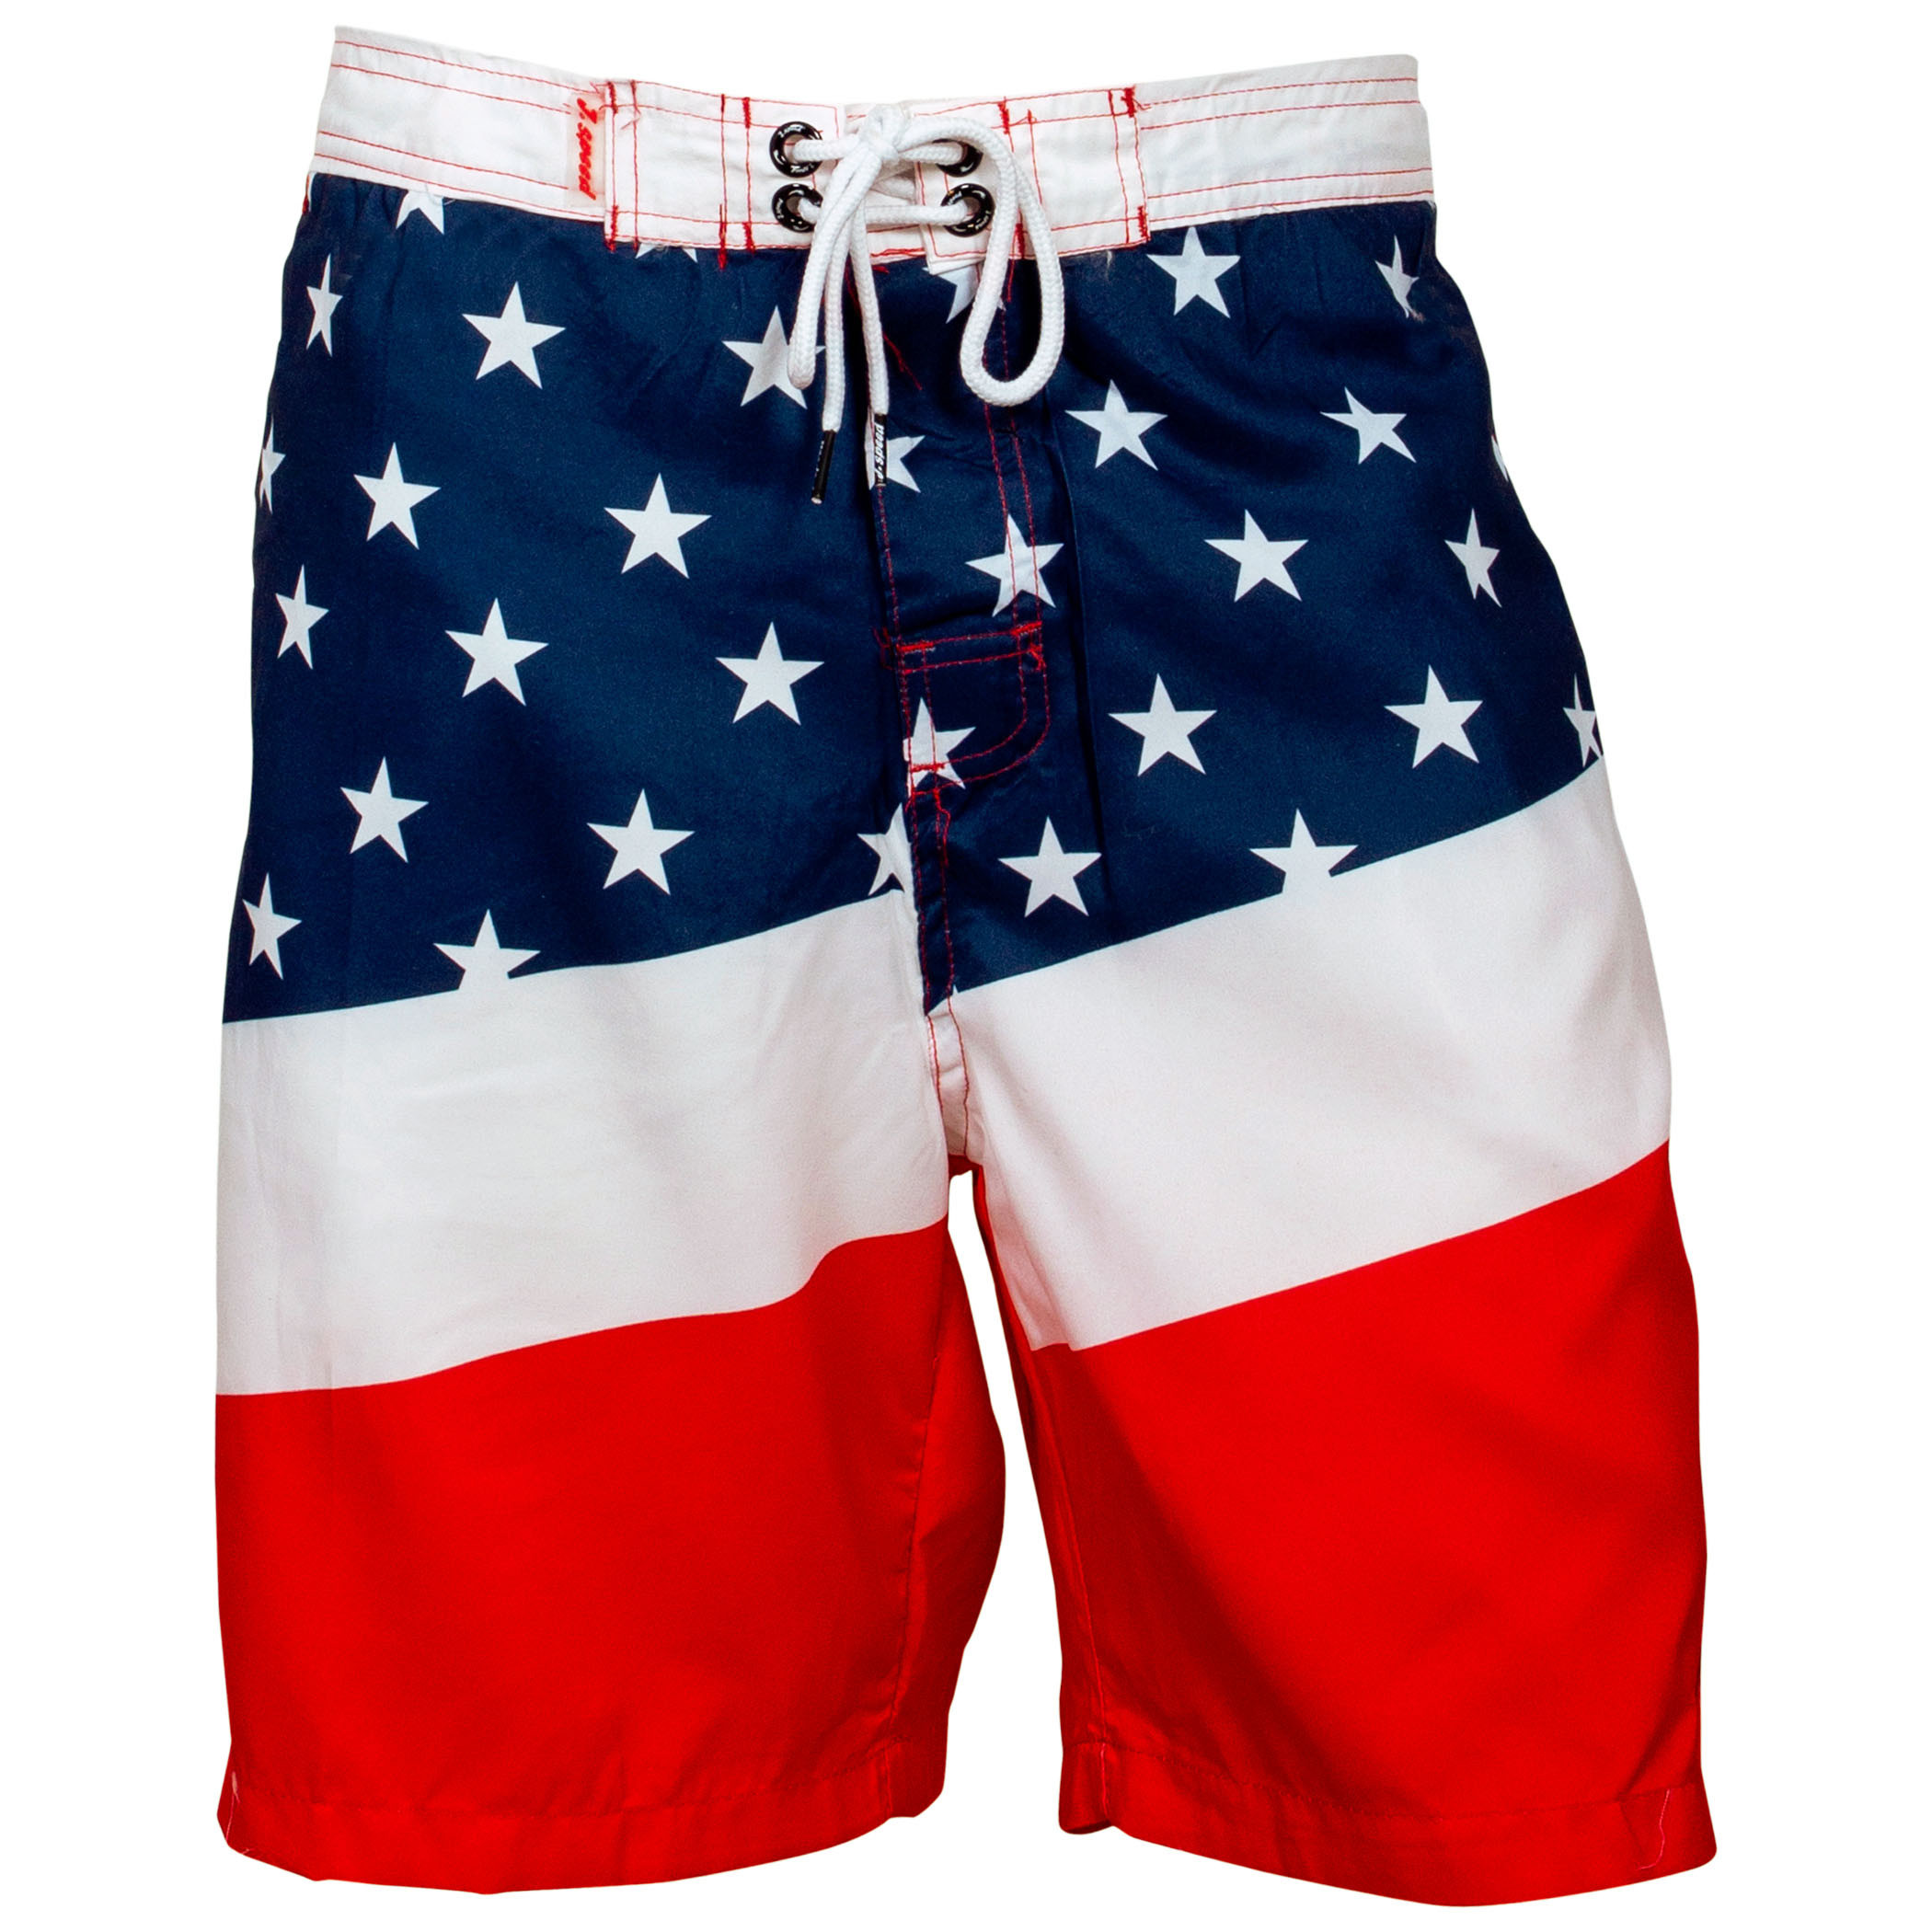 USA Patriotic Diagonal Stars and Stripes Board Shorts